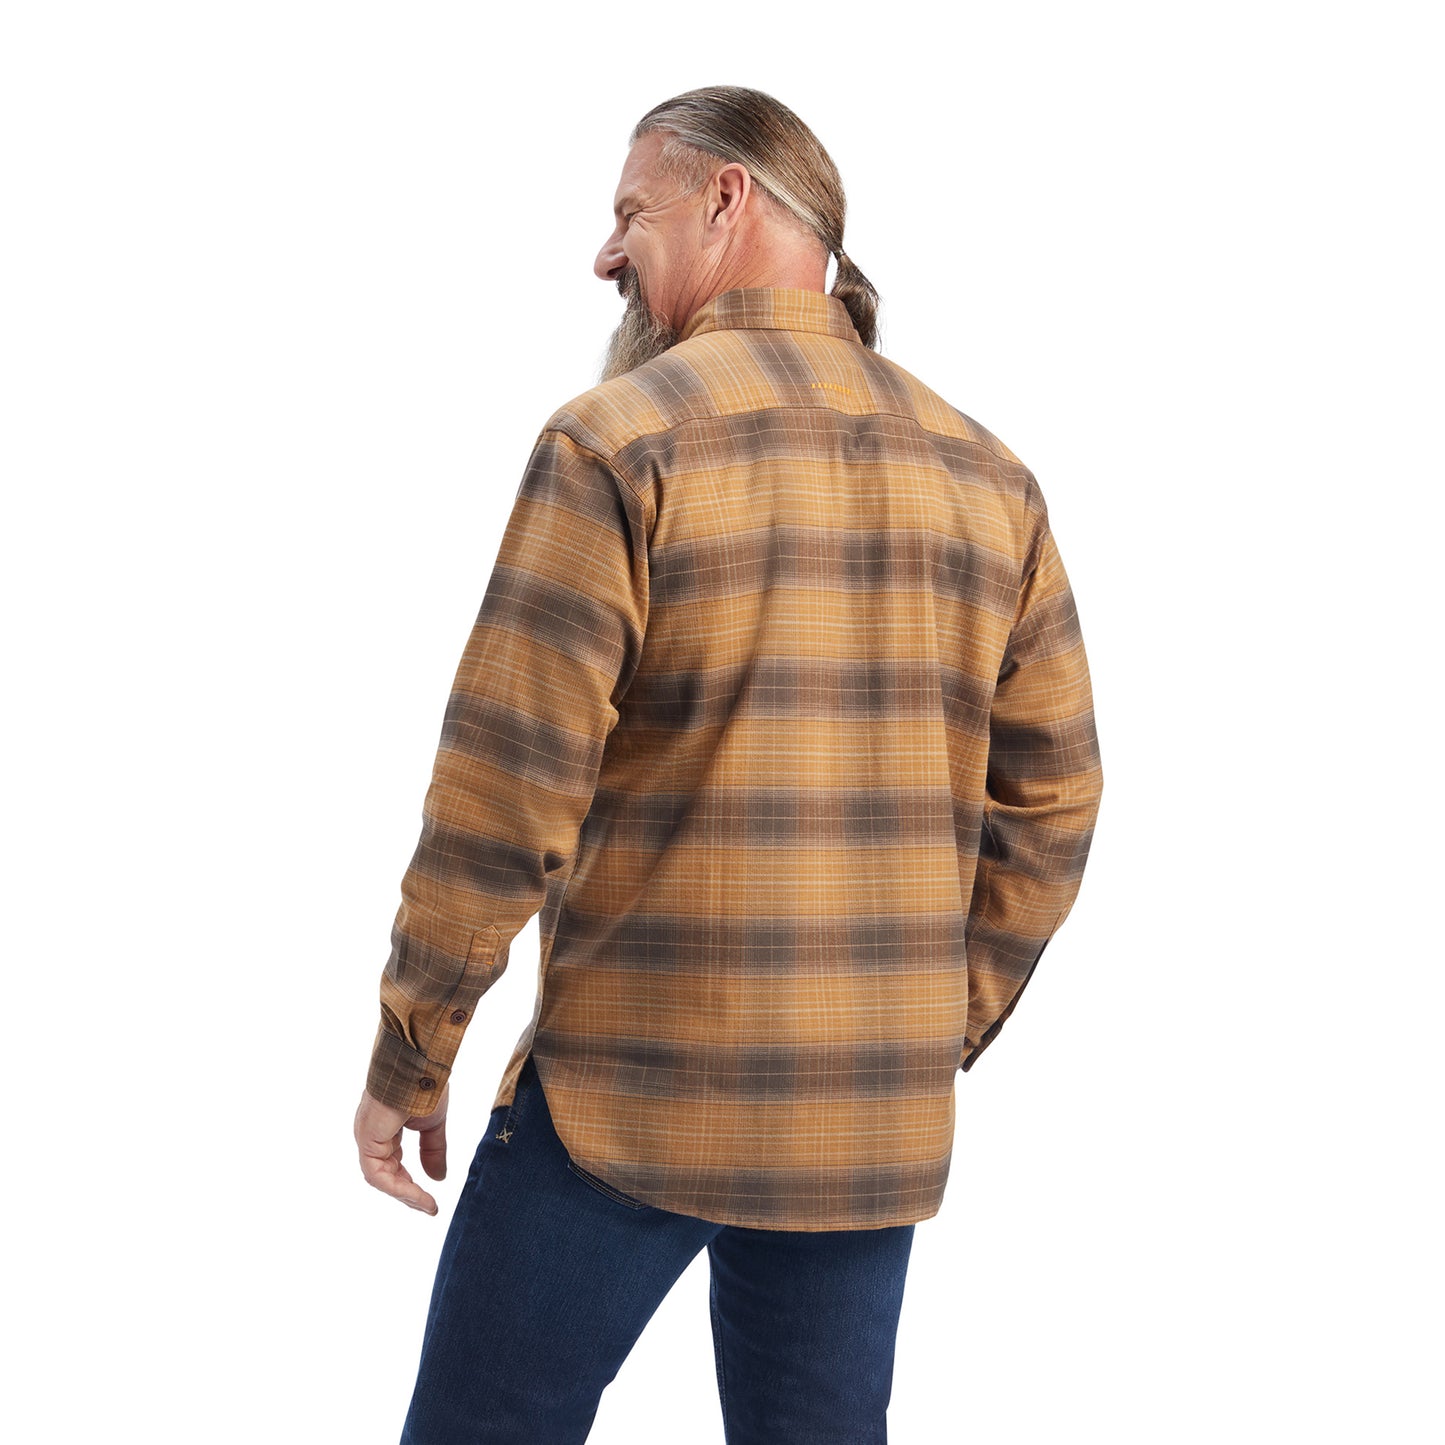 Ariat® Men's Rebar DuraStretch Sand Flannel Button Down Shirt 10041544